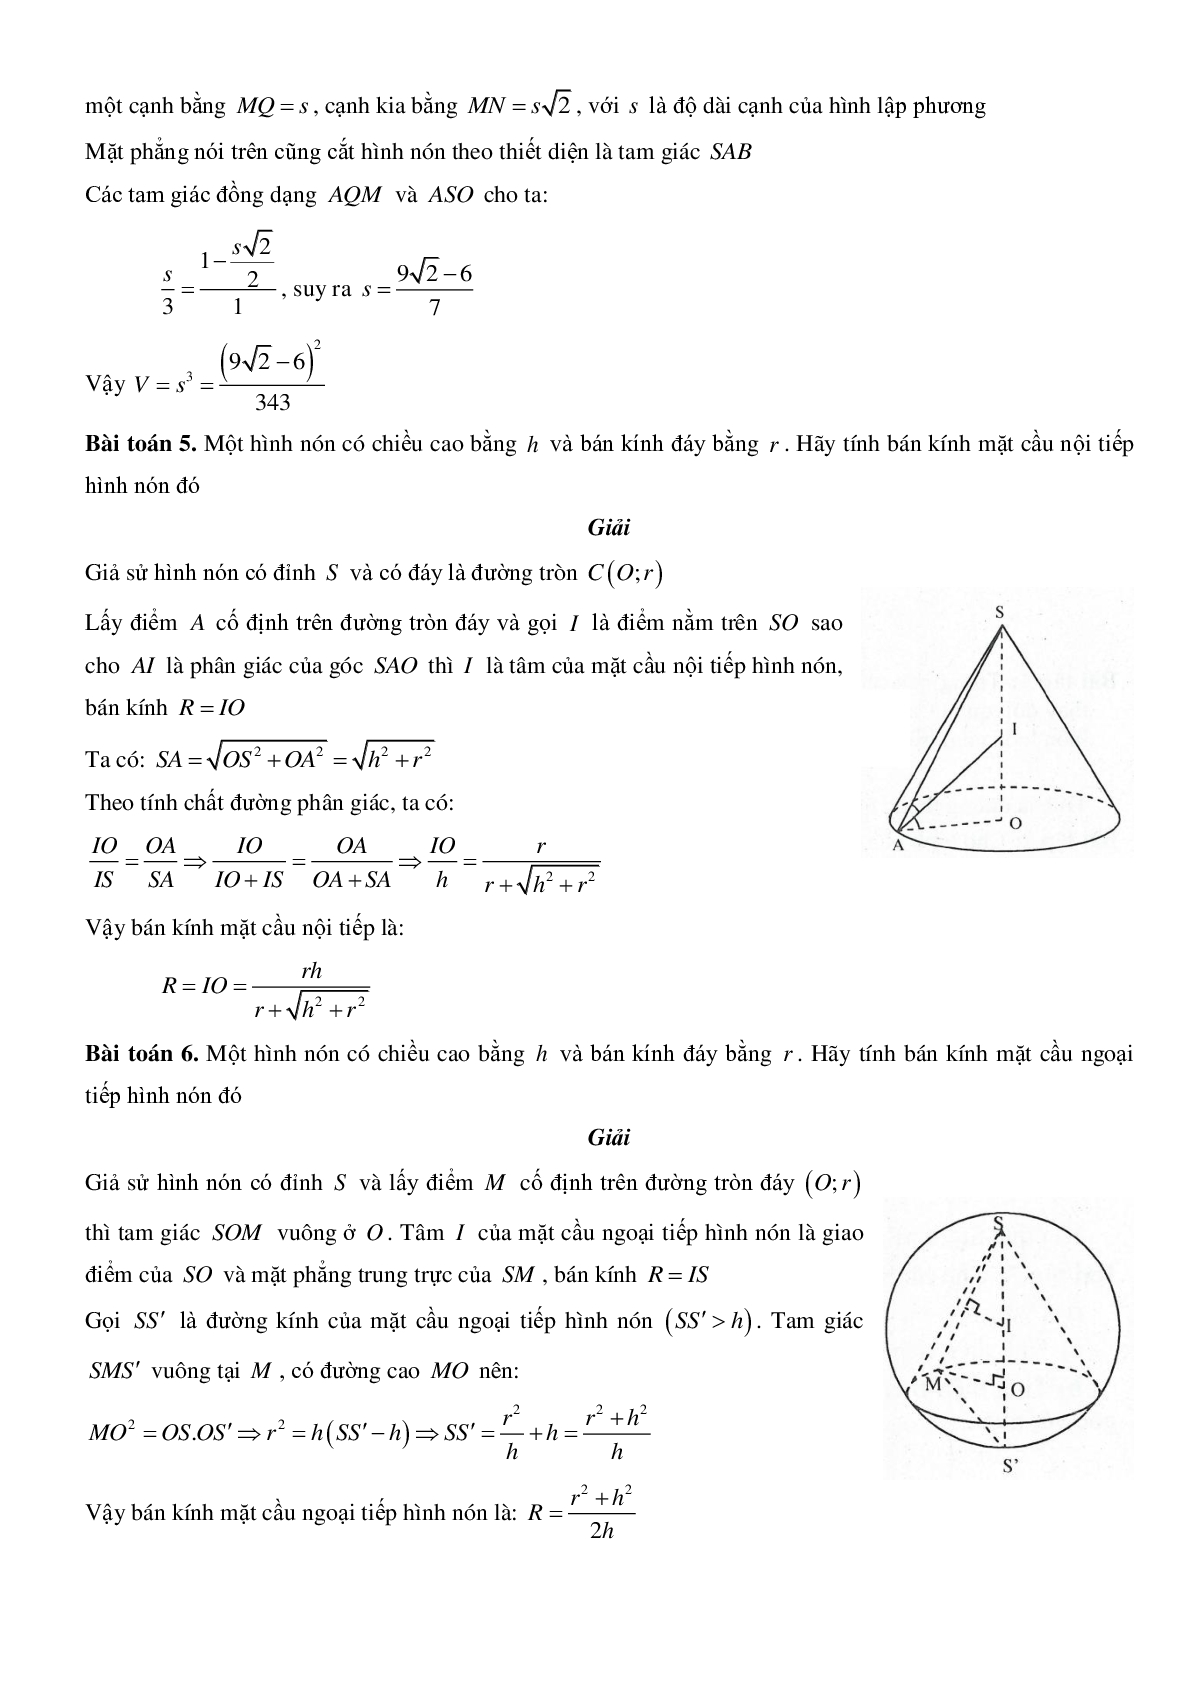 Mặt nón - Hình nón - Khối nón - Ôn thi THPT QG môn toán (trang 9)